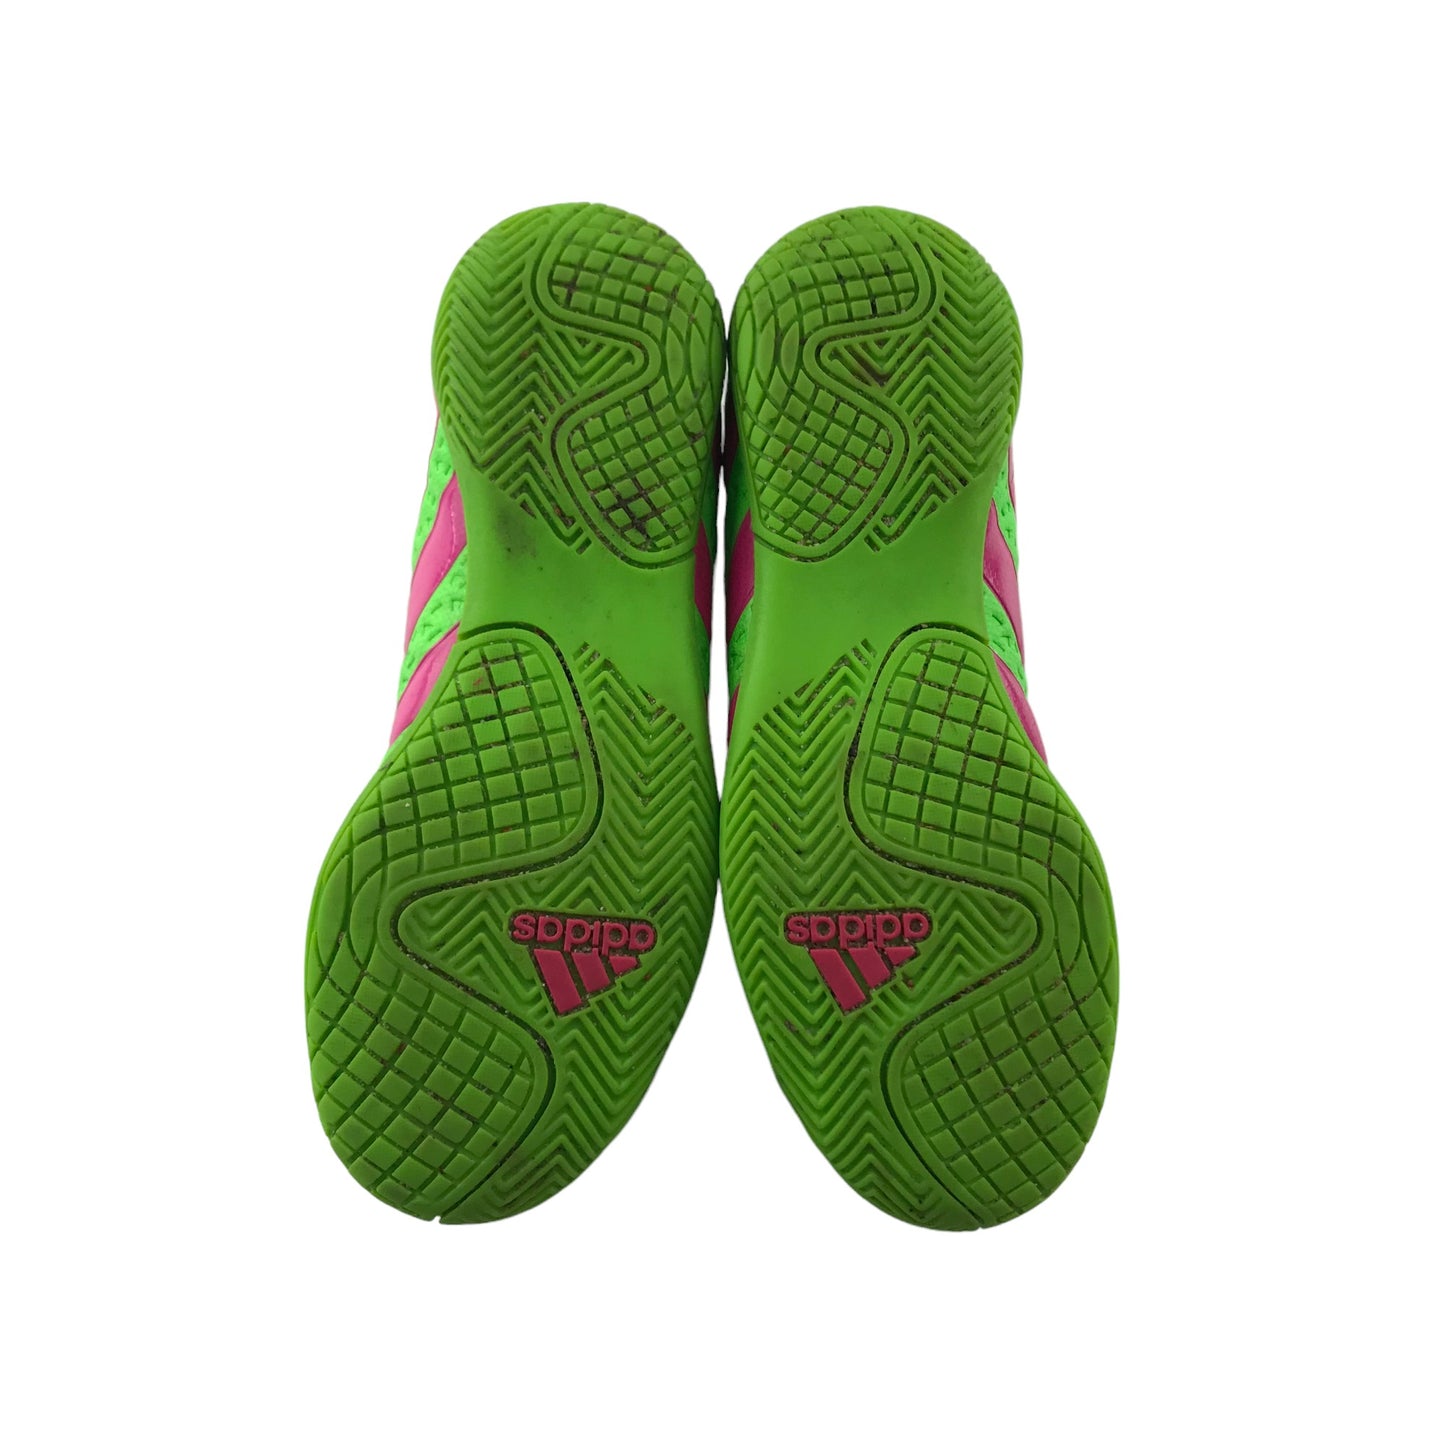 Adidas Football Boots Shoe Size 2 Neon Green Indoor Pink Adidas Logo